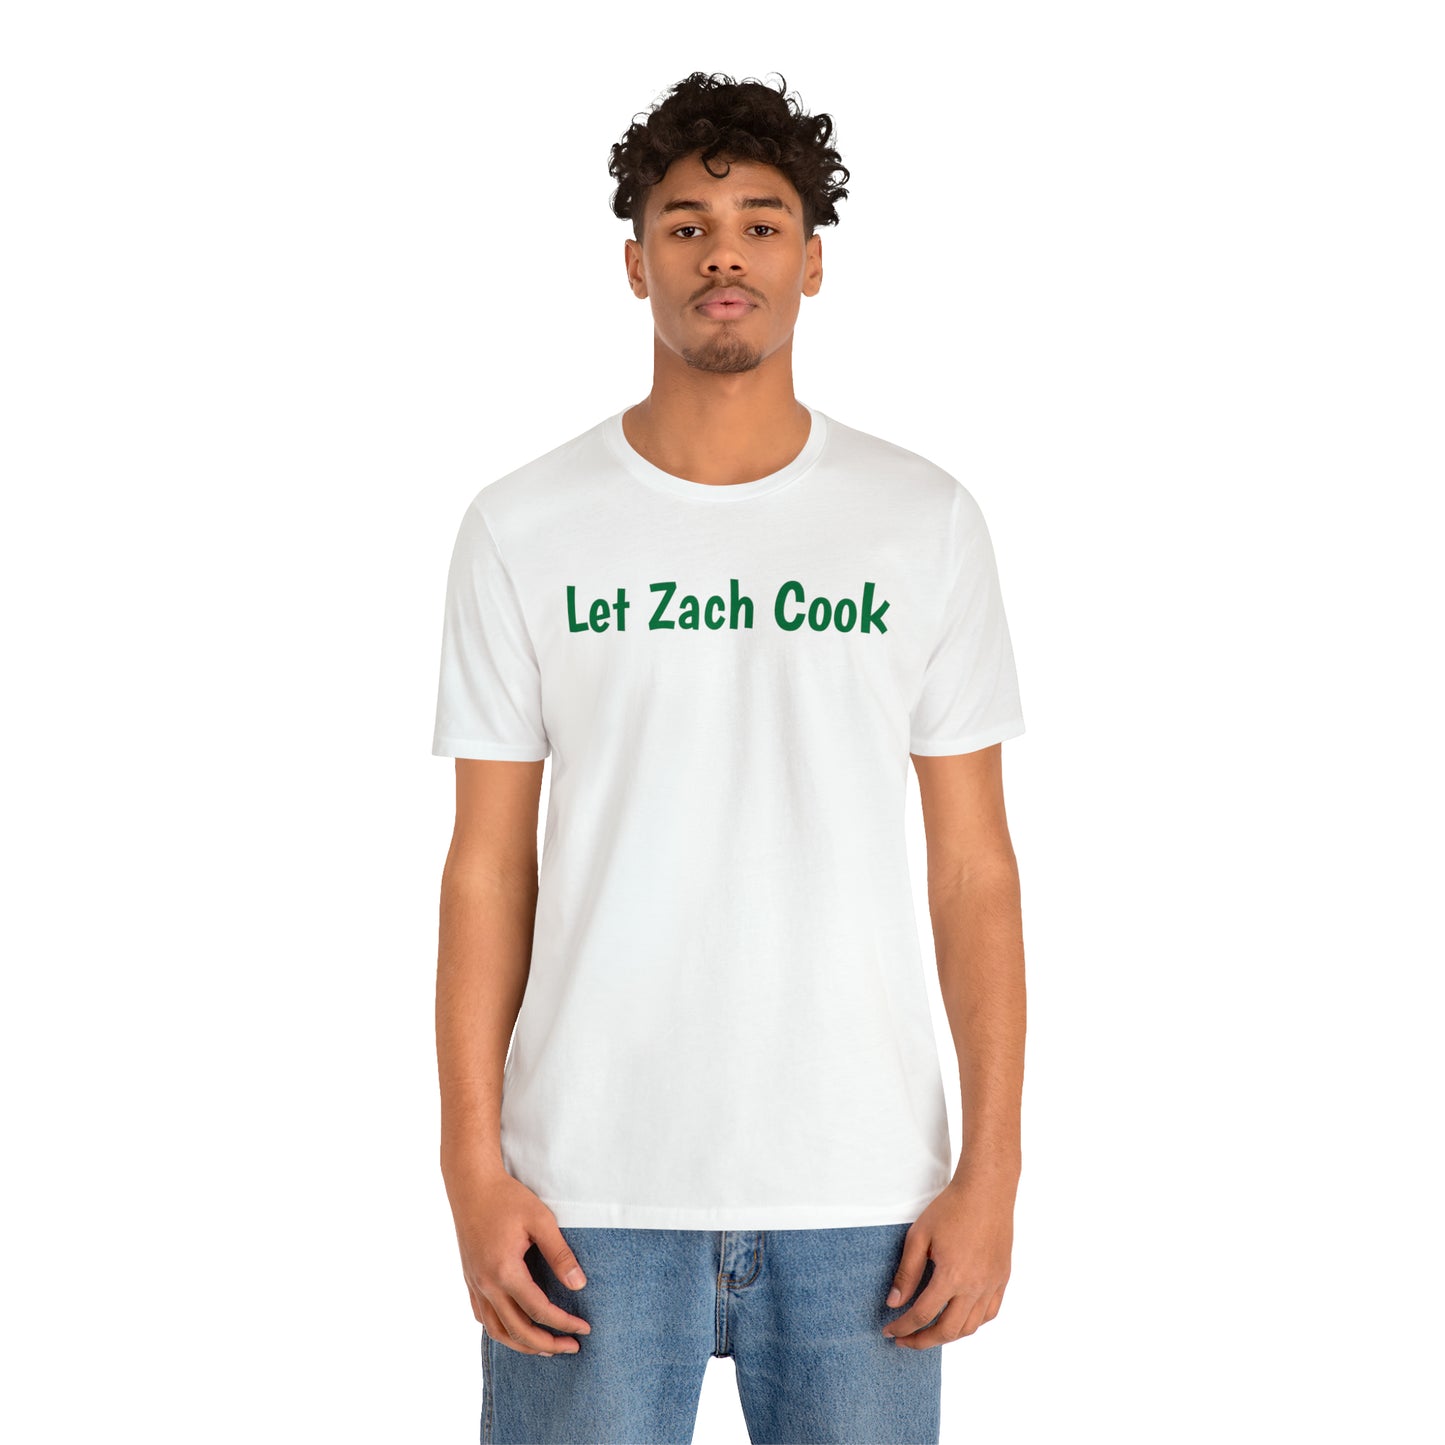 Let Zach Cook Shirt